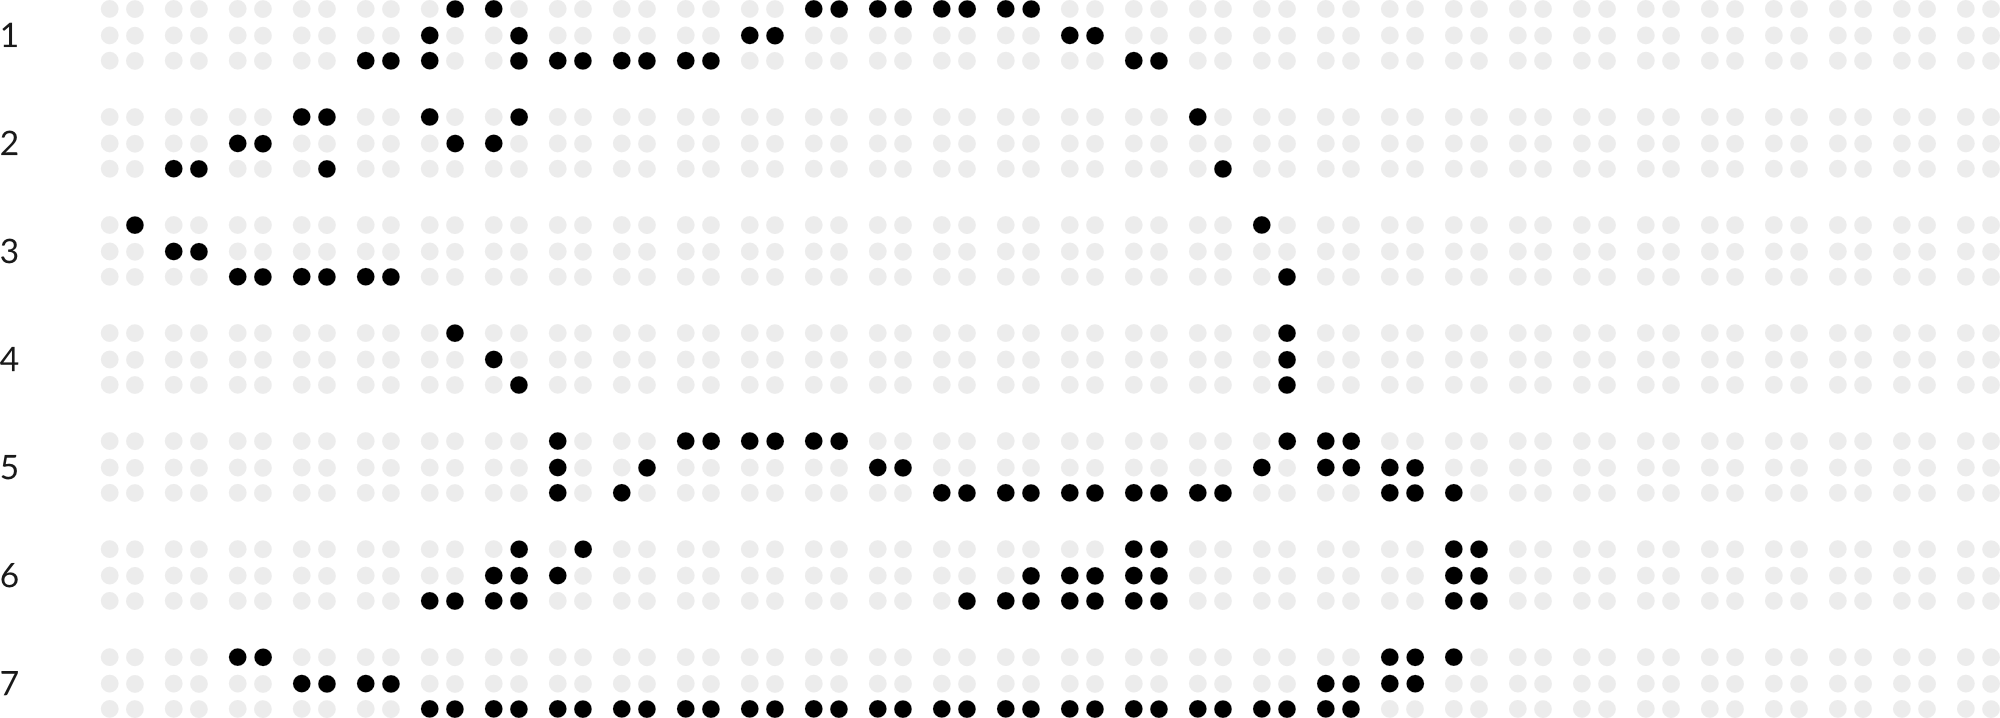 Braillebild mit Raster: Ratte